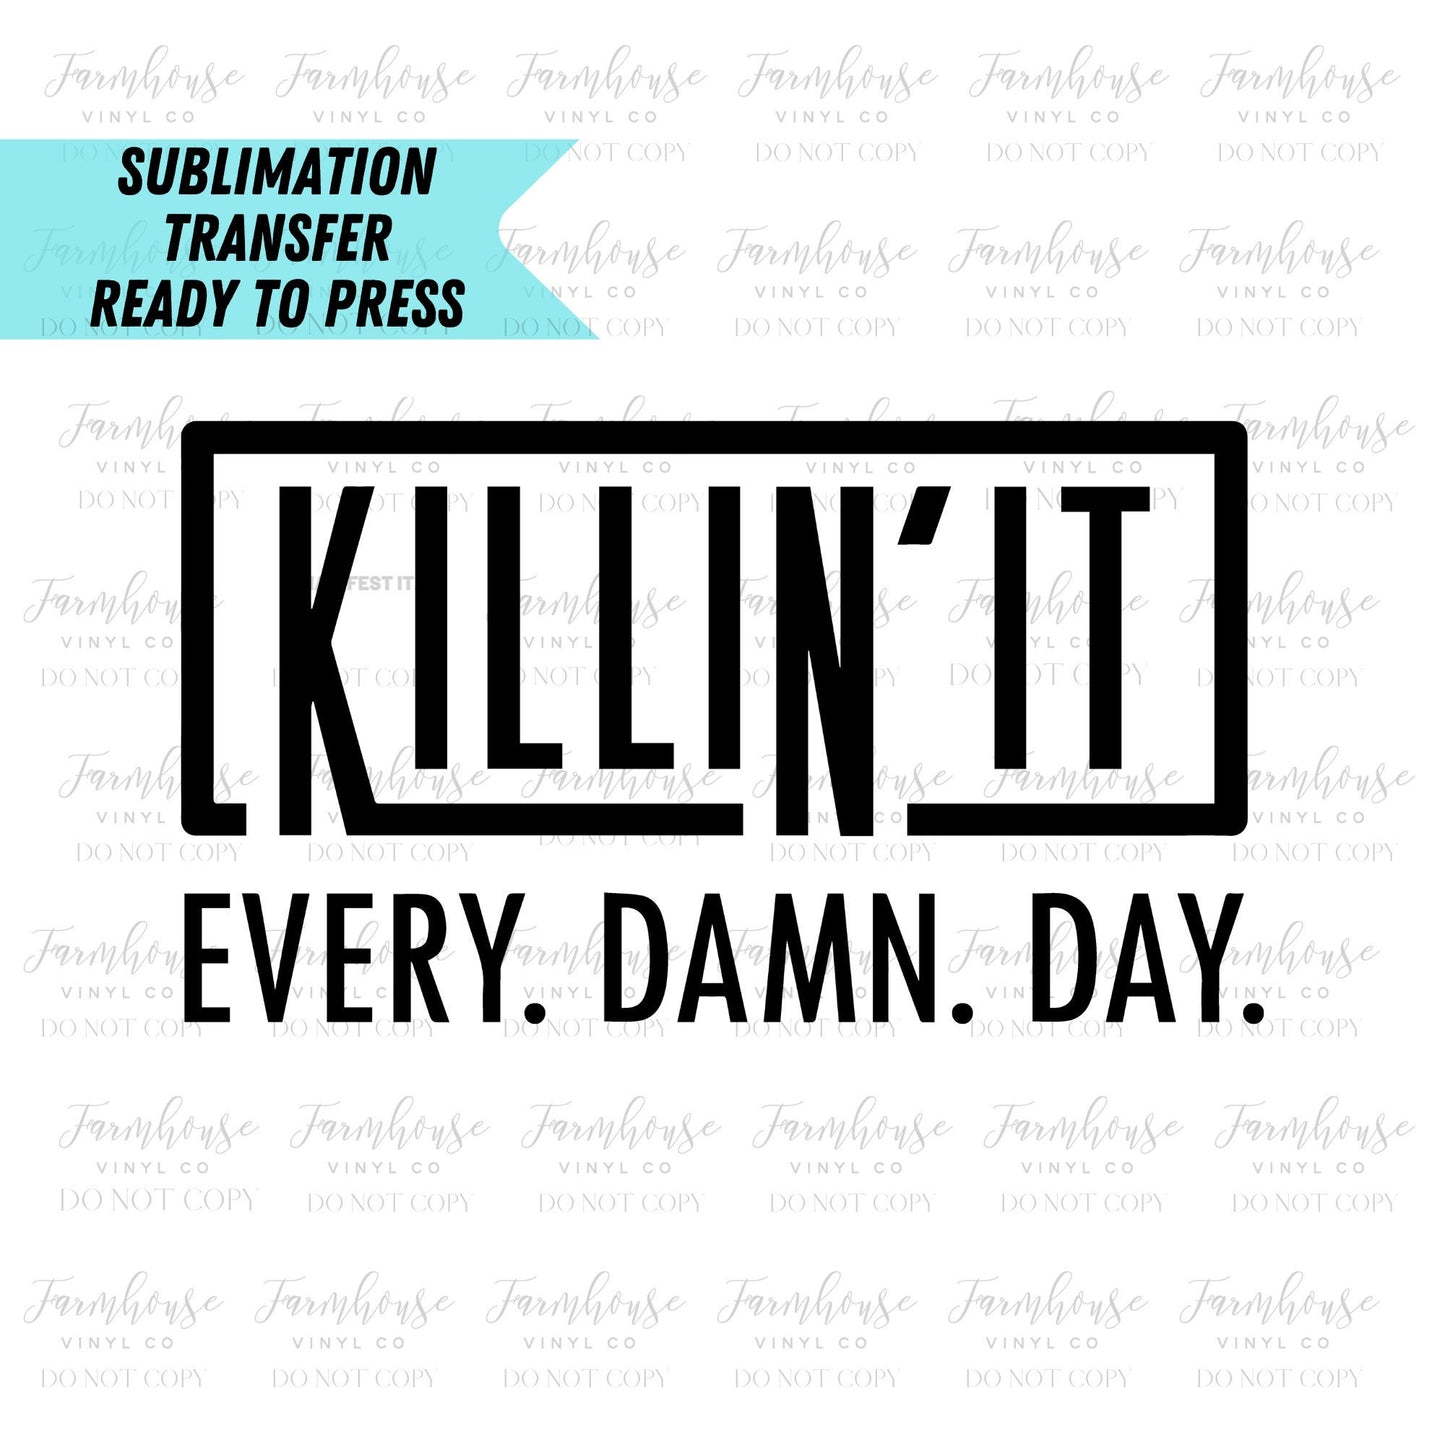 Killin' It Every Damn Day Ready to Press Sublimation Transfer - Farmhouse Vinyl Co